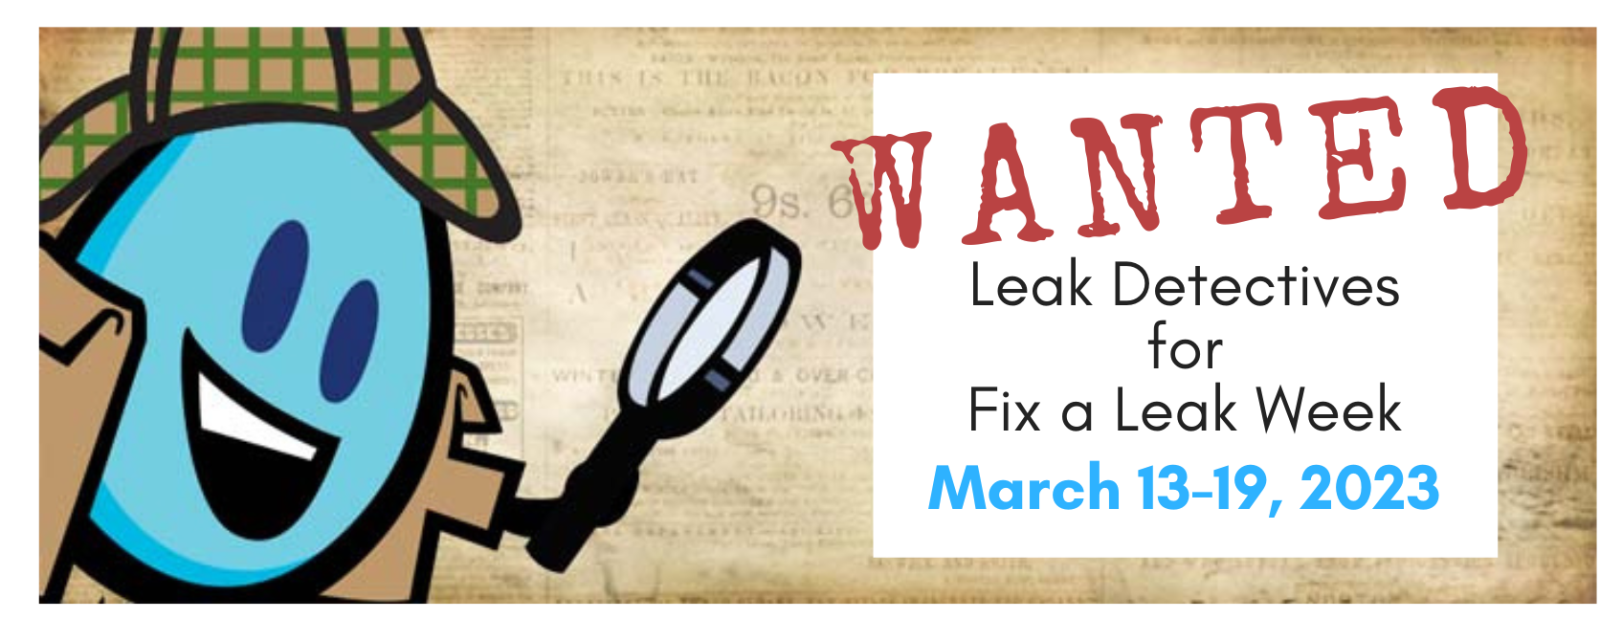 Fix a Leak Week - March 13-19